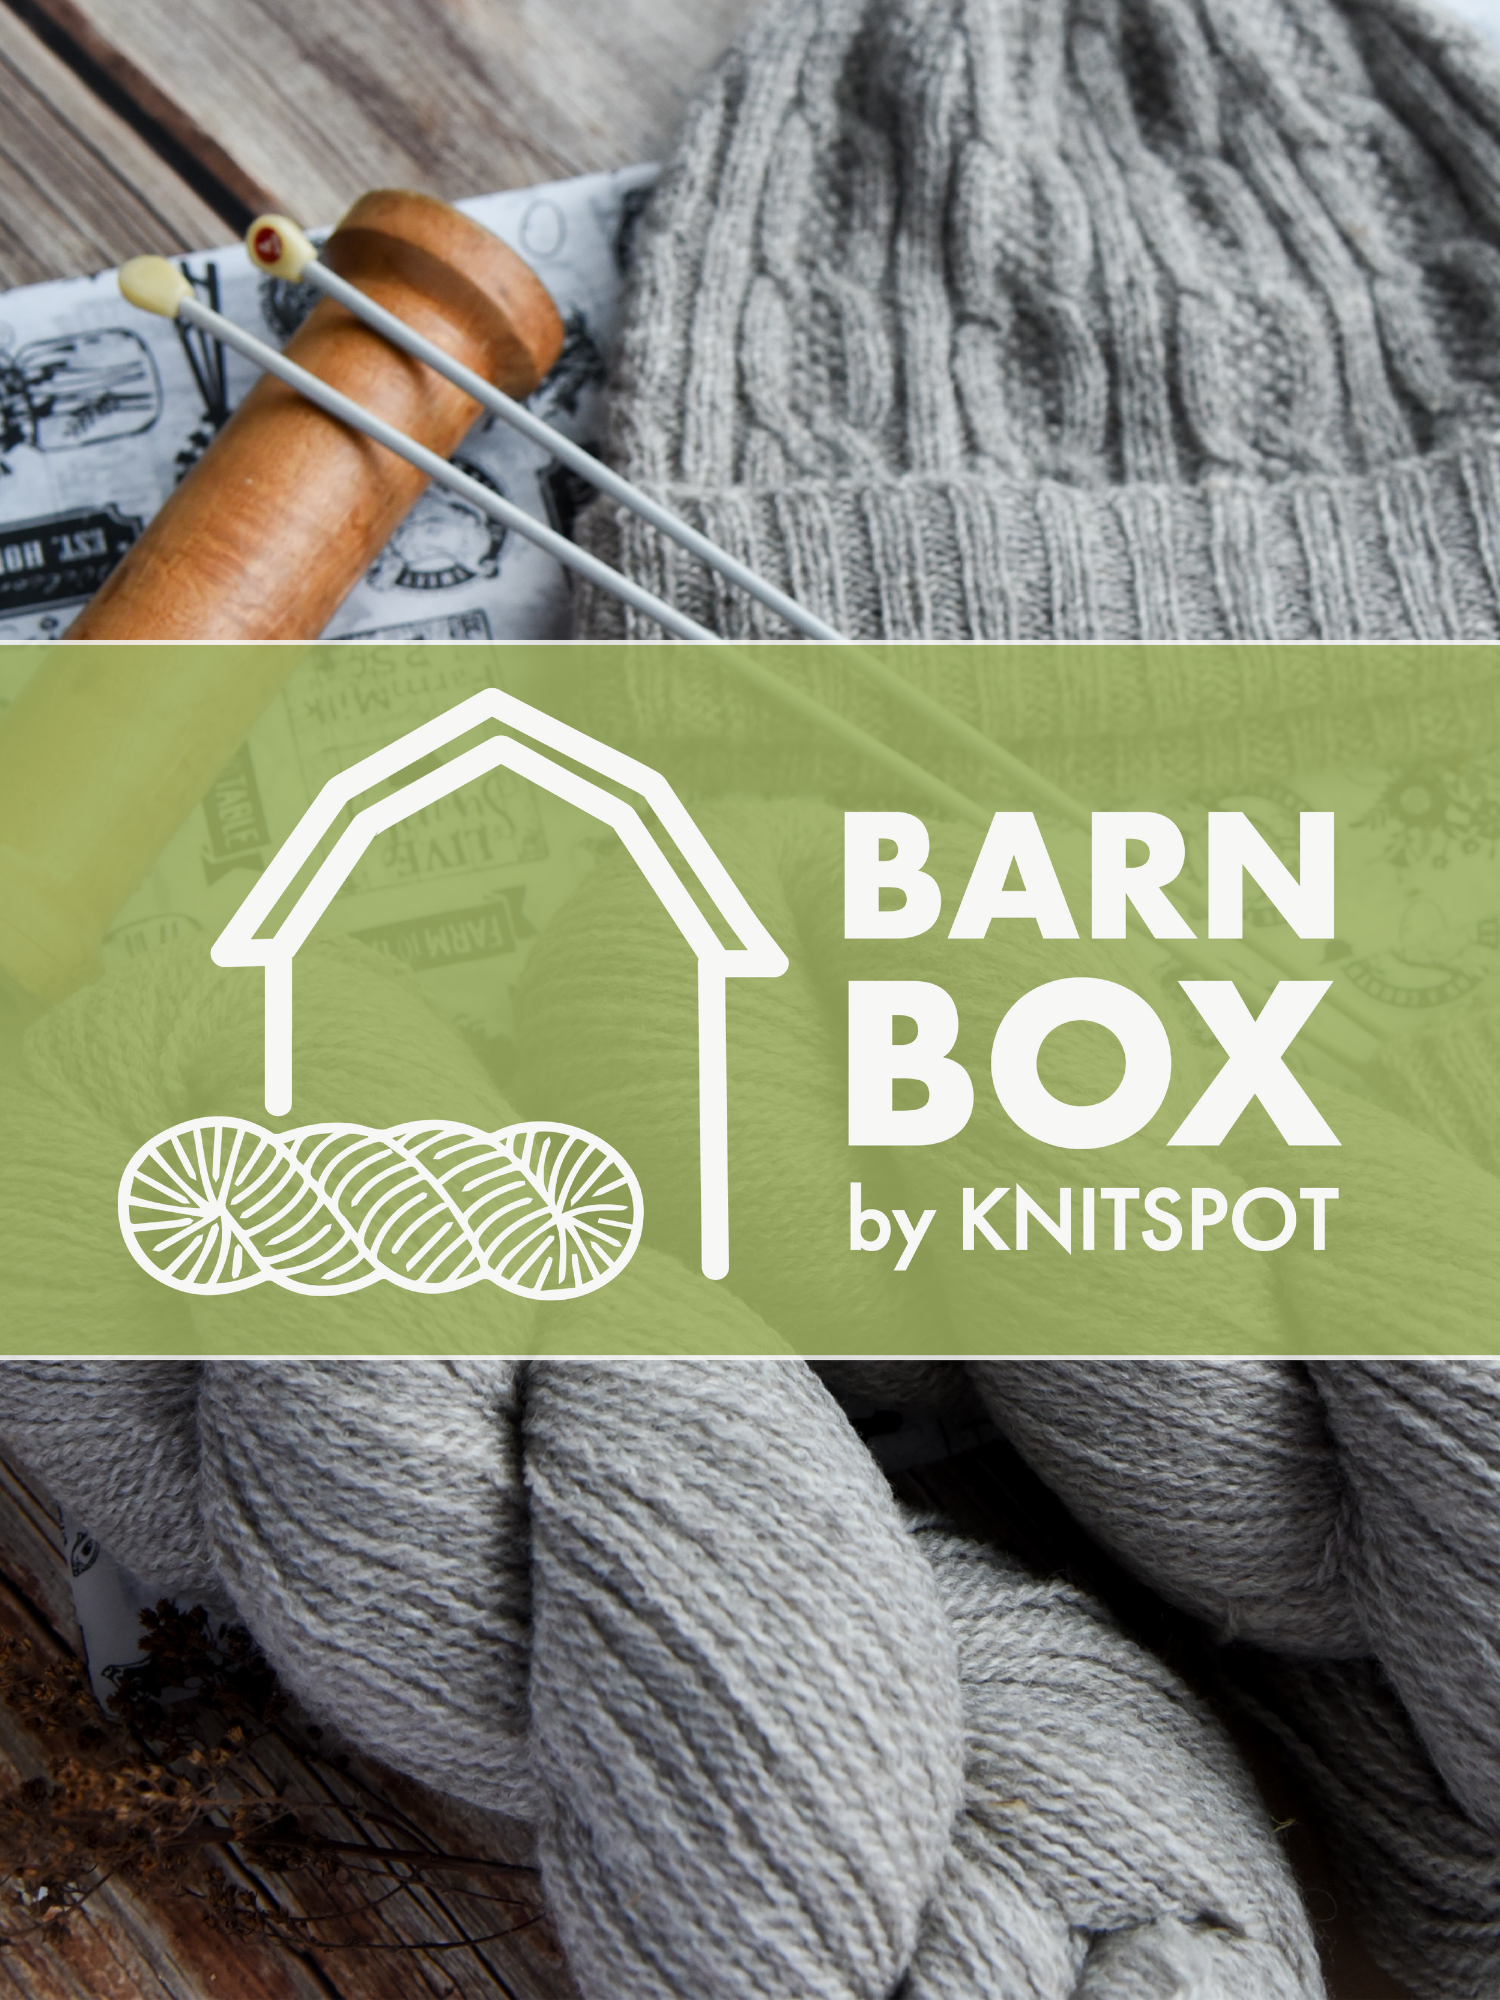 Knitting - Yarn Club